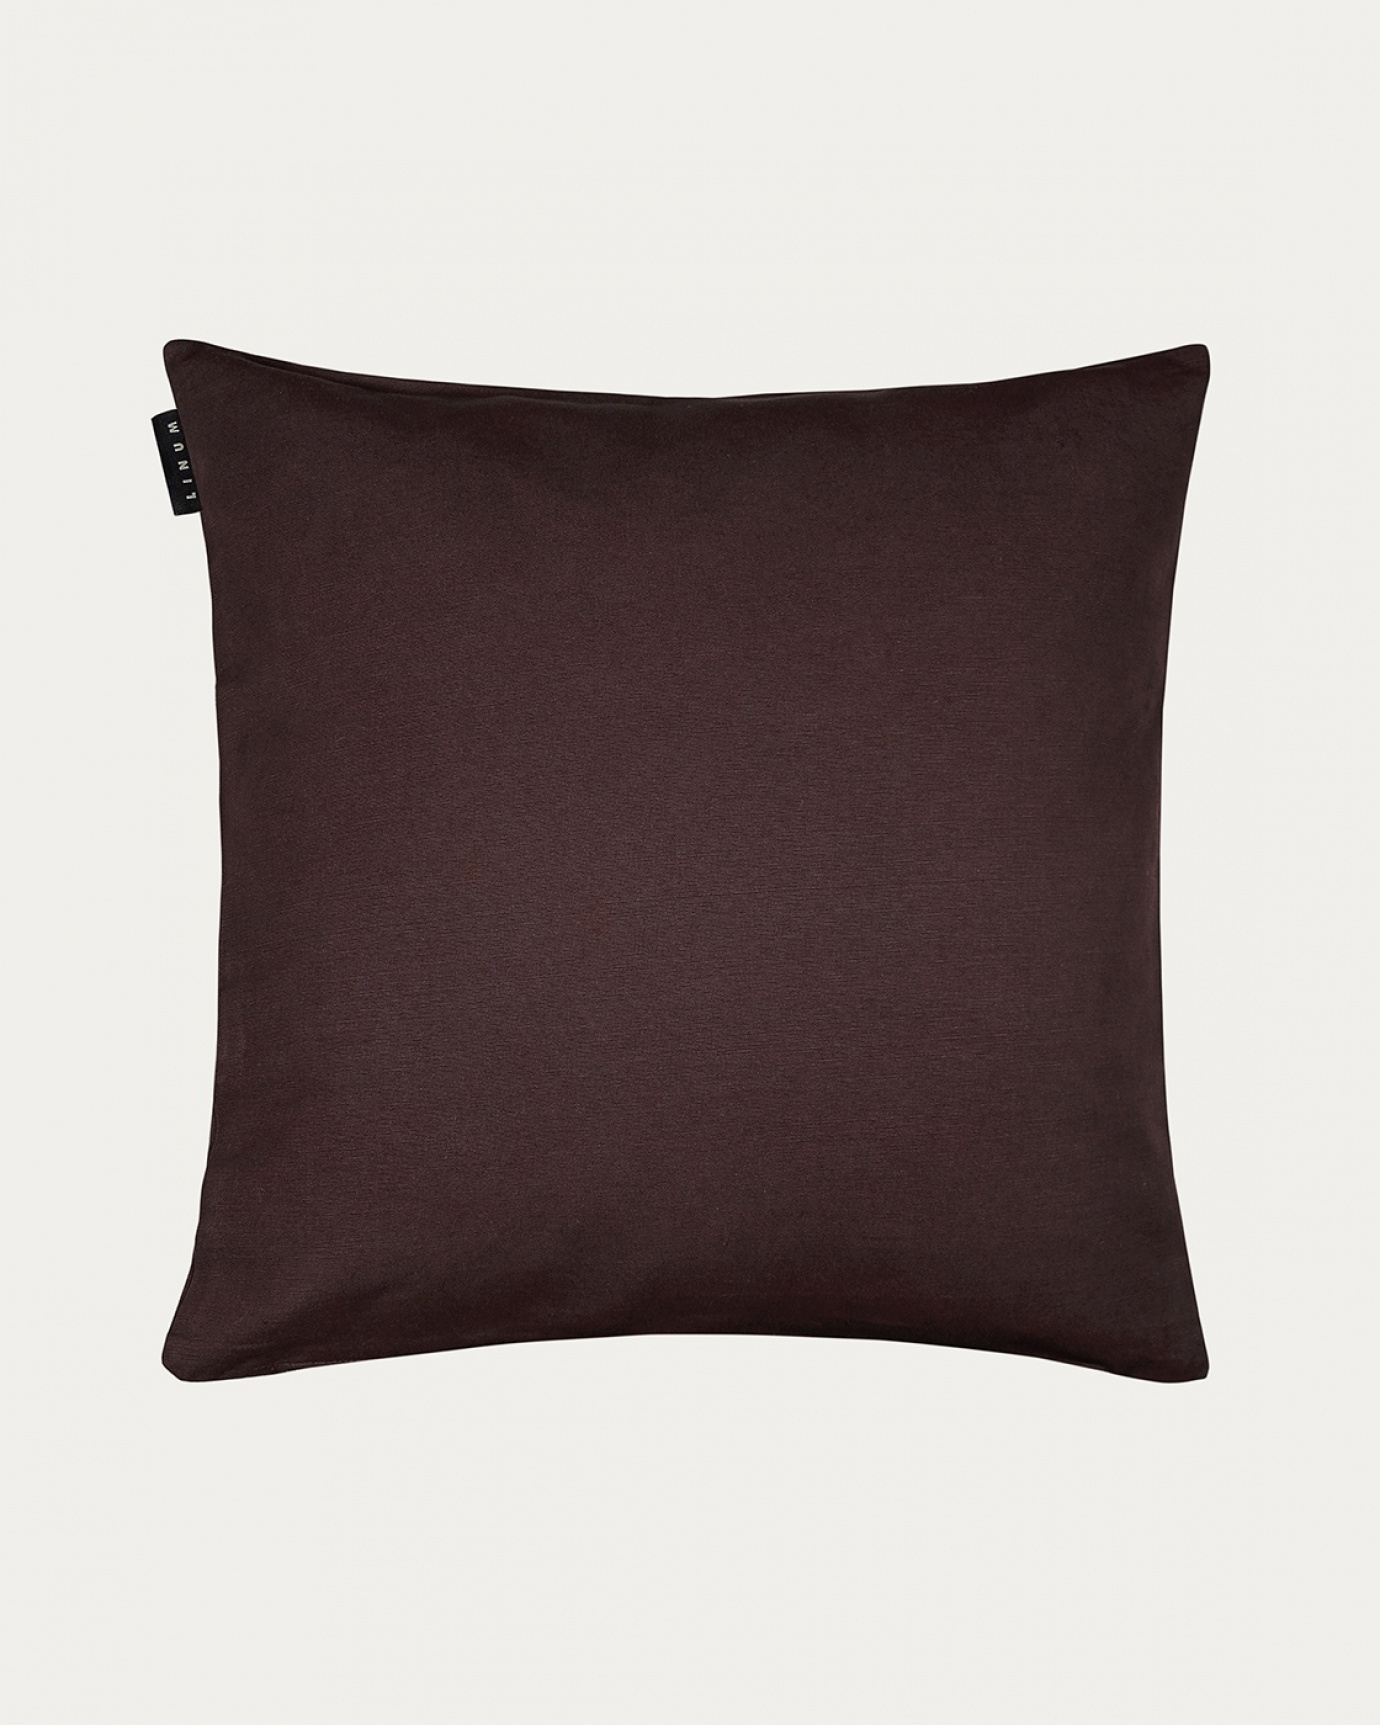 Produktbild mörkbrun ANNABELL kuddfodral av mjuk bomull från LINUM DESIGN. Storlek 50x50 cm.